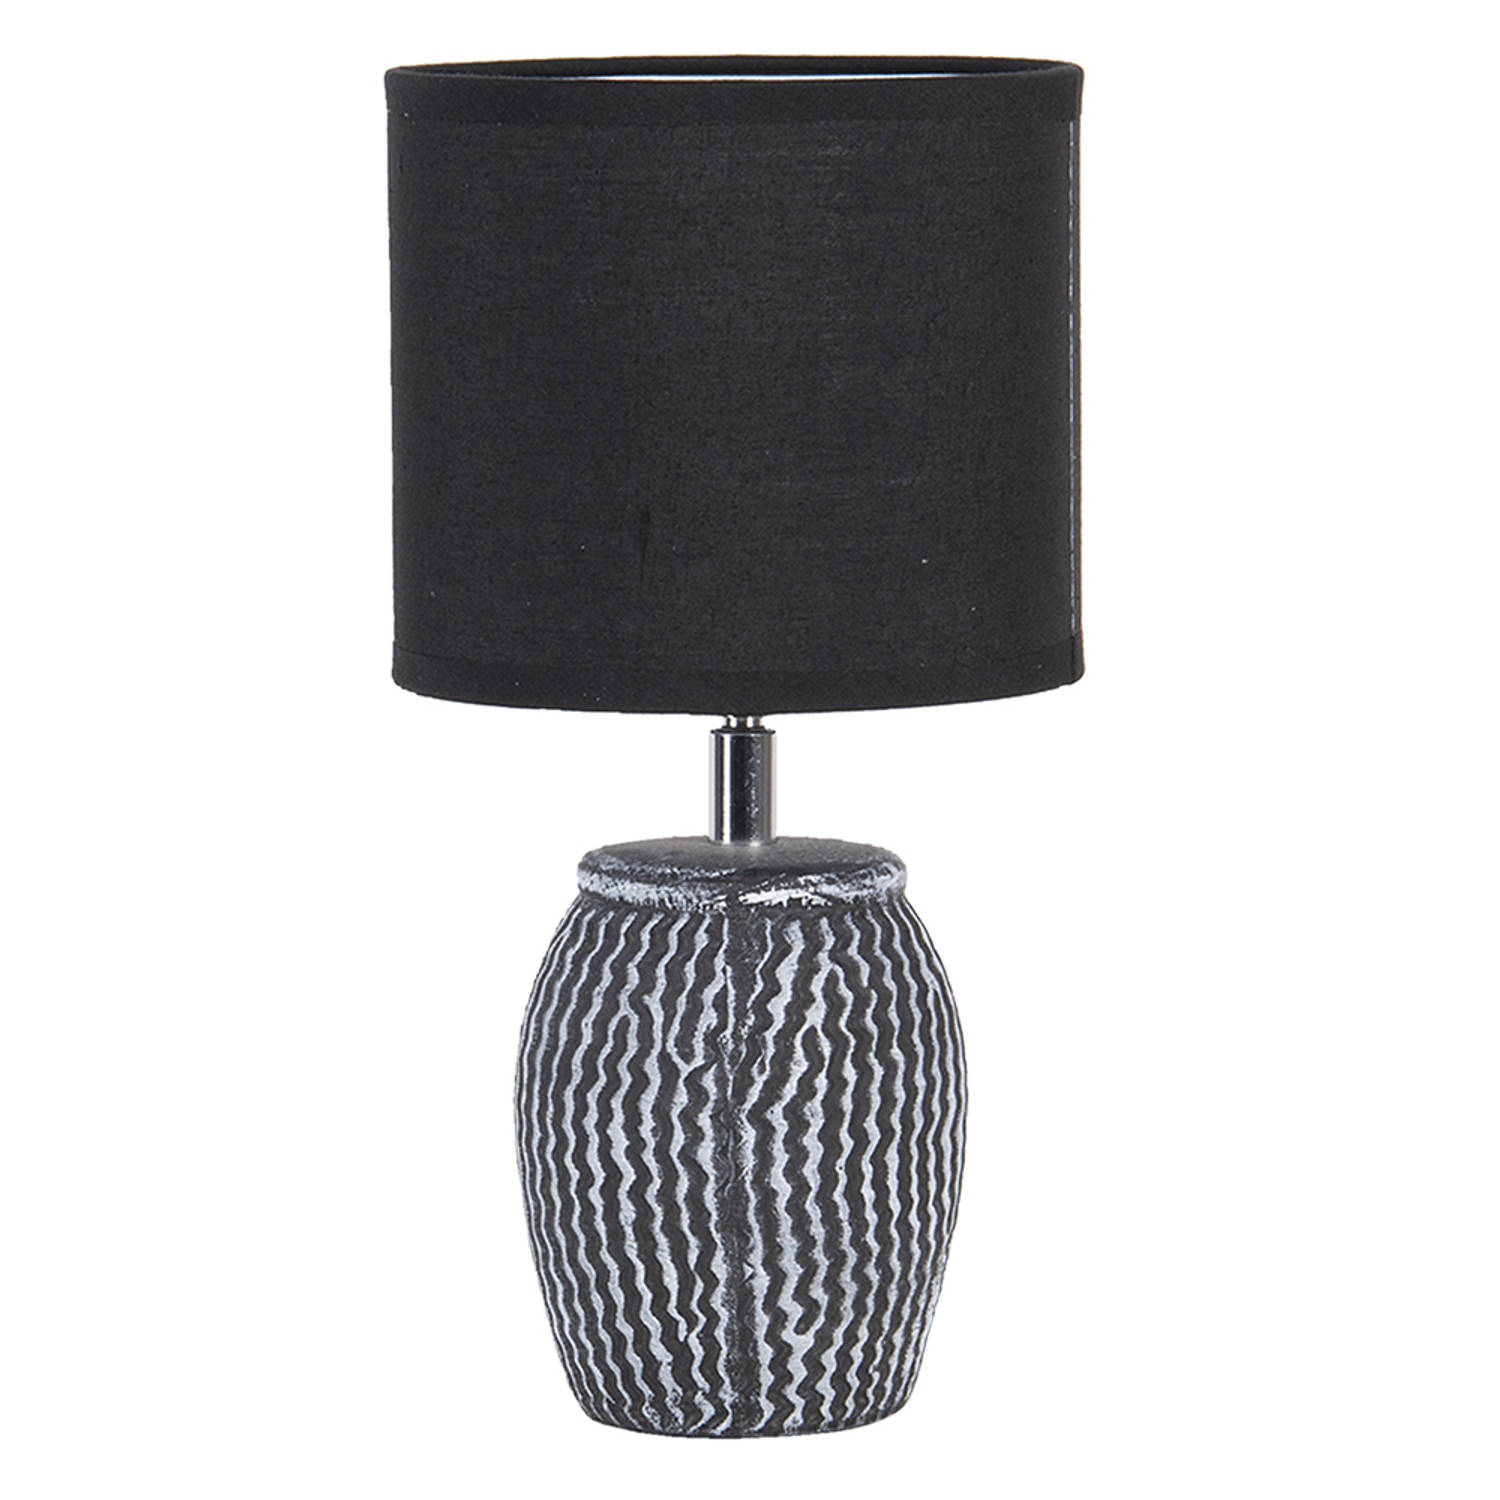 HAES DECO - Tafellamp - Modern Chic - Stijlvolle Lamp, formaat Ø 15x26 cm - Grijs / Wit met Zwarte Lampenkap - Bureaulamp, Sfeerlamp, Nachtlampje